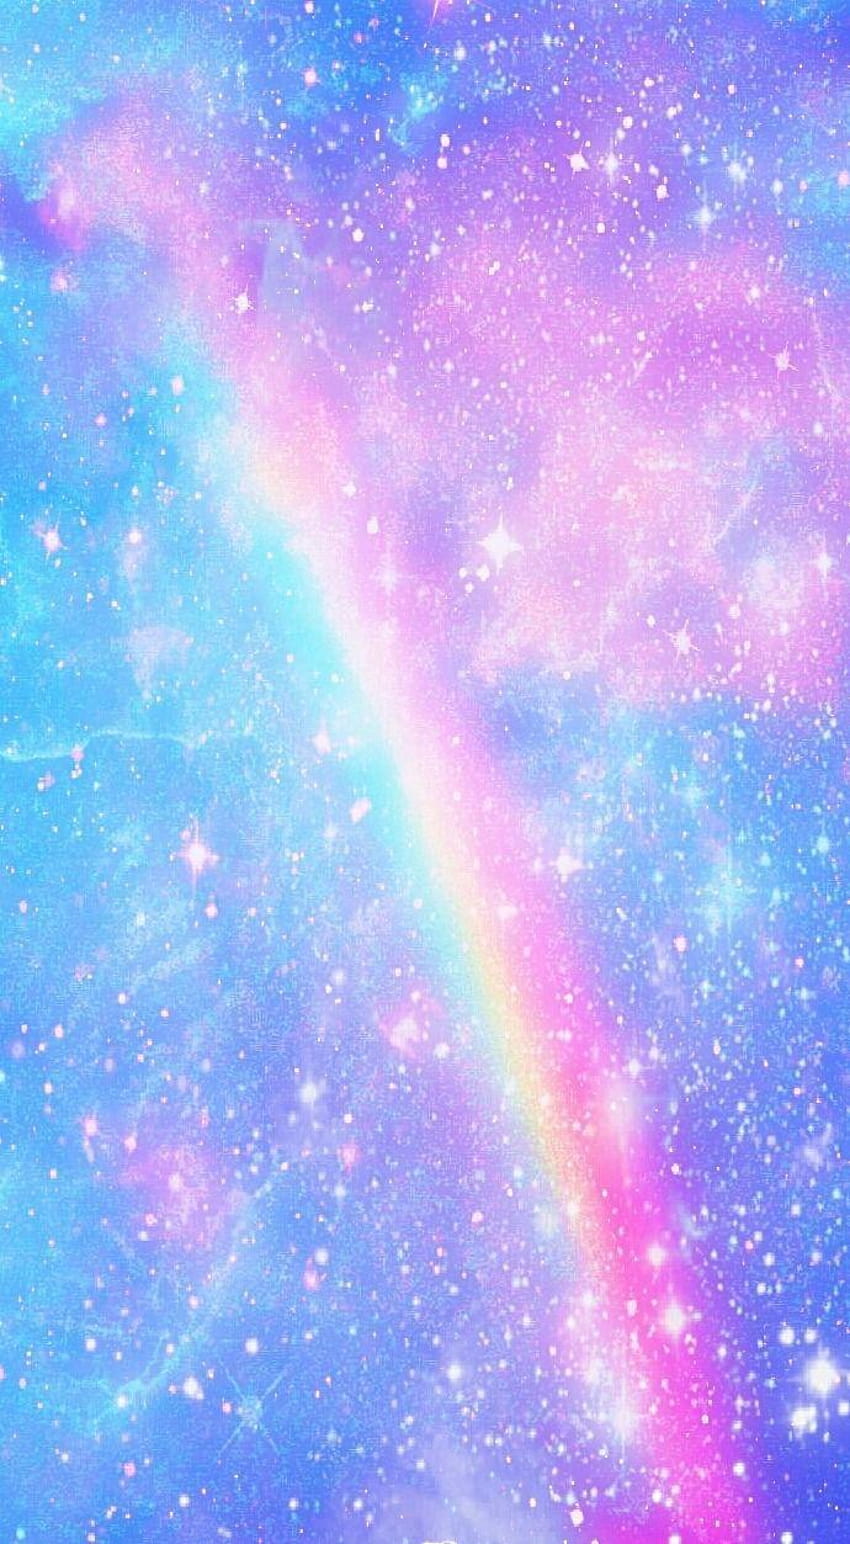 Màu cầu vồng sặc sỡ và ánh kim tuyến lấp lánh đã sẵn sàng khiến trái tim bạn rực cháy với bộ hình nền Diêm Vương Rainbow rực rỡ và đầy ứng dụng này. Hãy vui vẻ và tràn đầy sức sống khi bạn nhìn vào hình ảnh sáng tạo này!